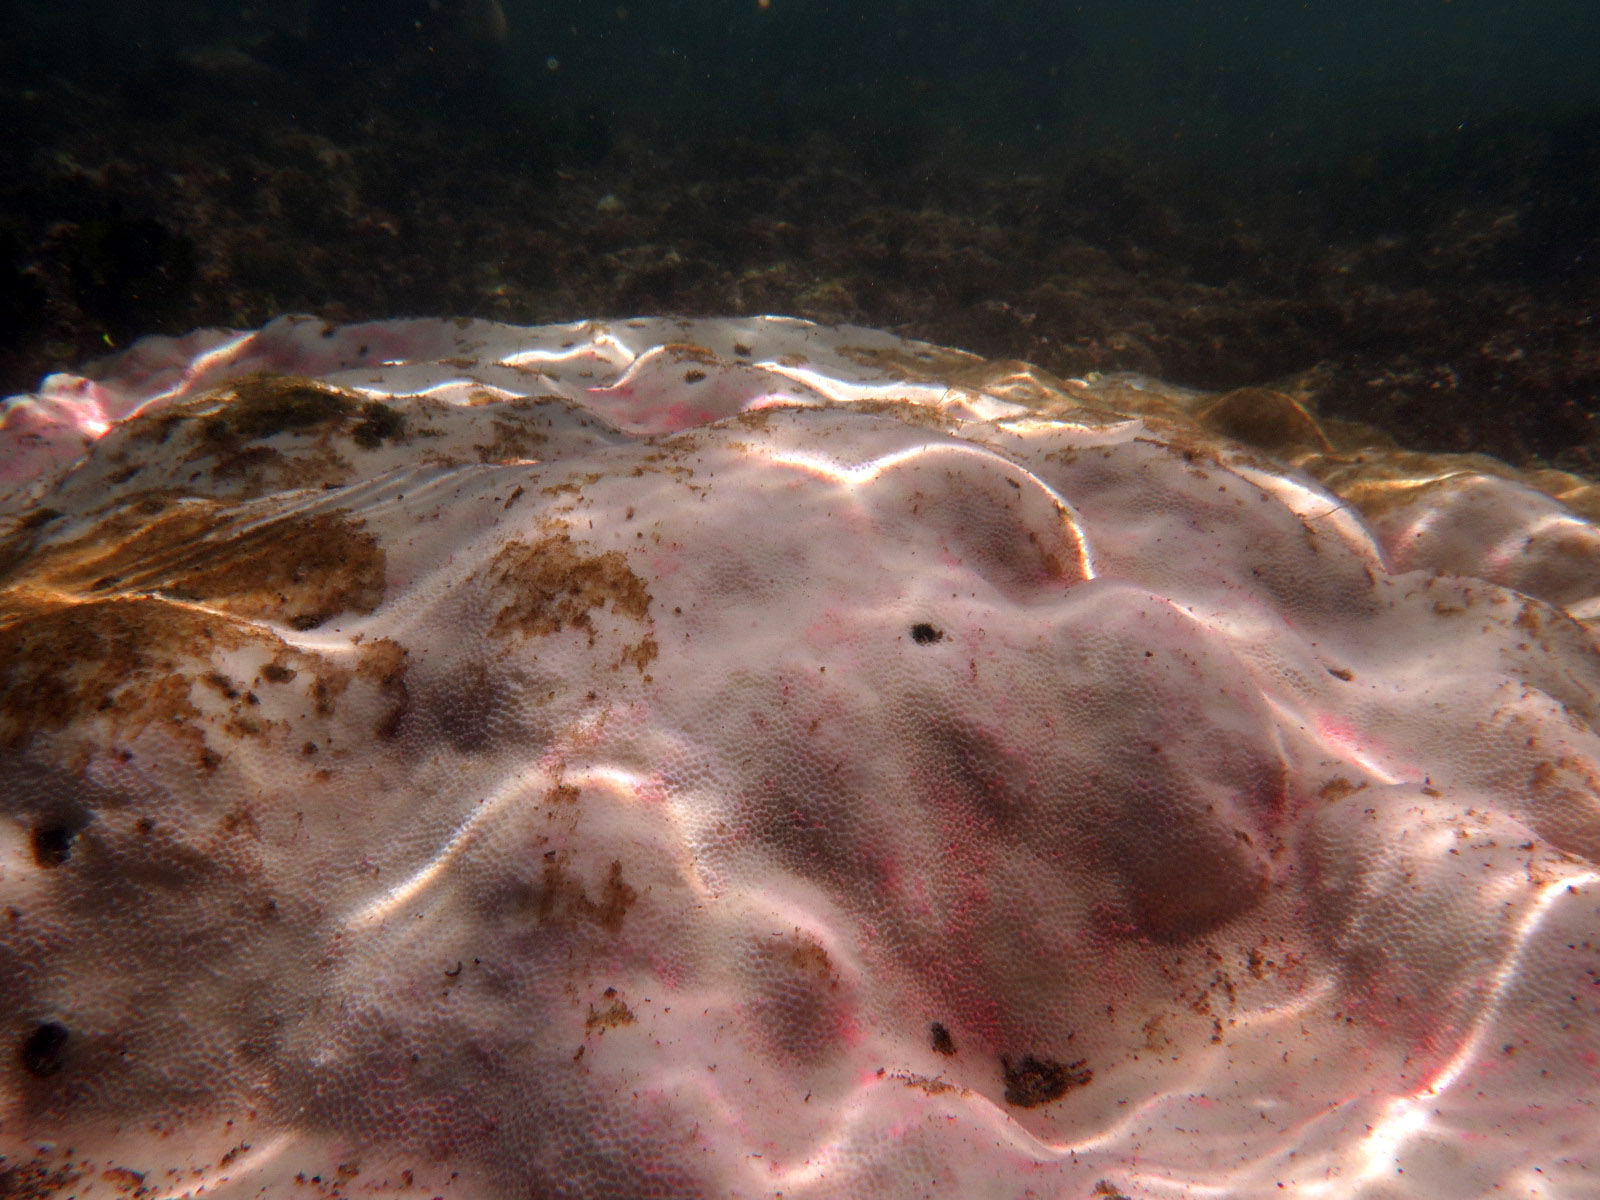 Categorías de blanqueamiento según apariencia externa de colonias de Porites Lobata en la zona intermareal de playa El Faro, ANP Complejo Los Cóbanos.